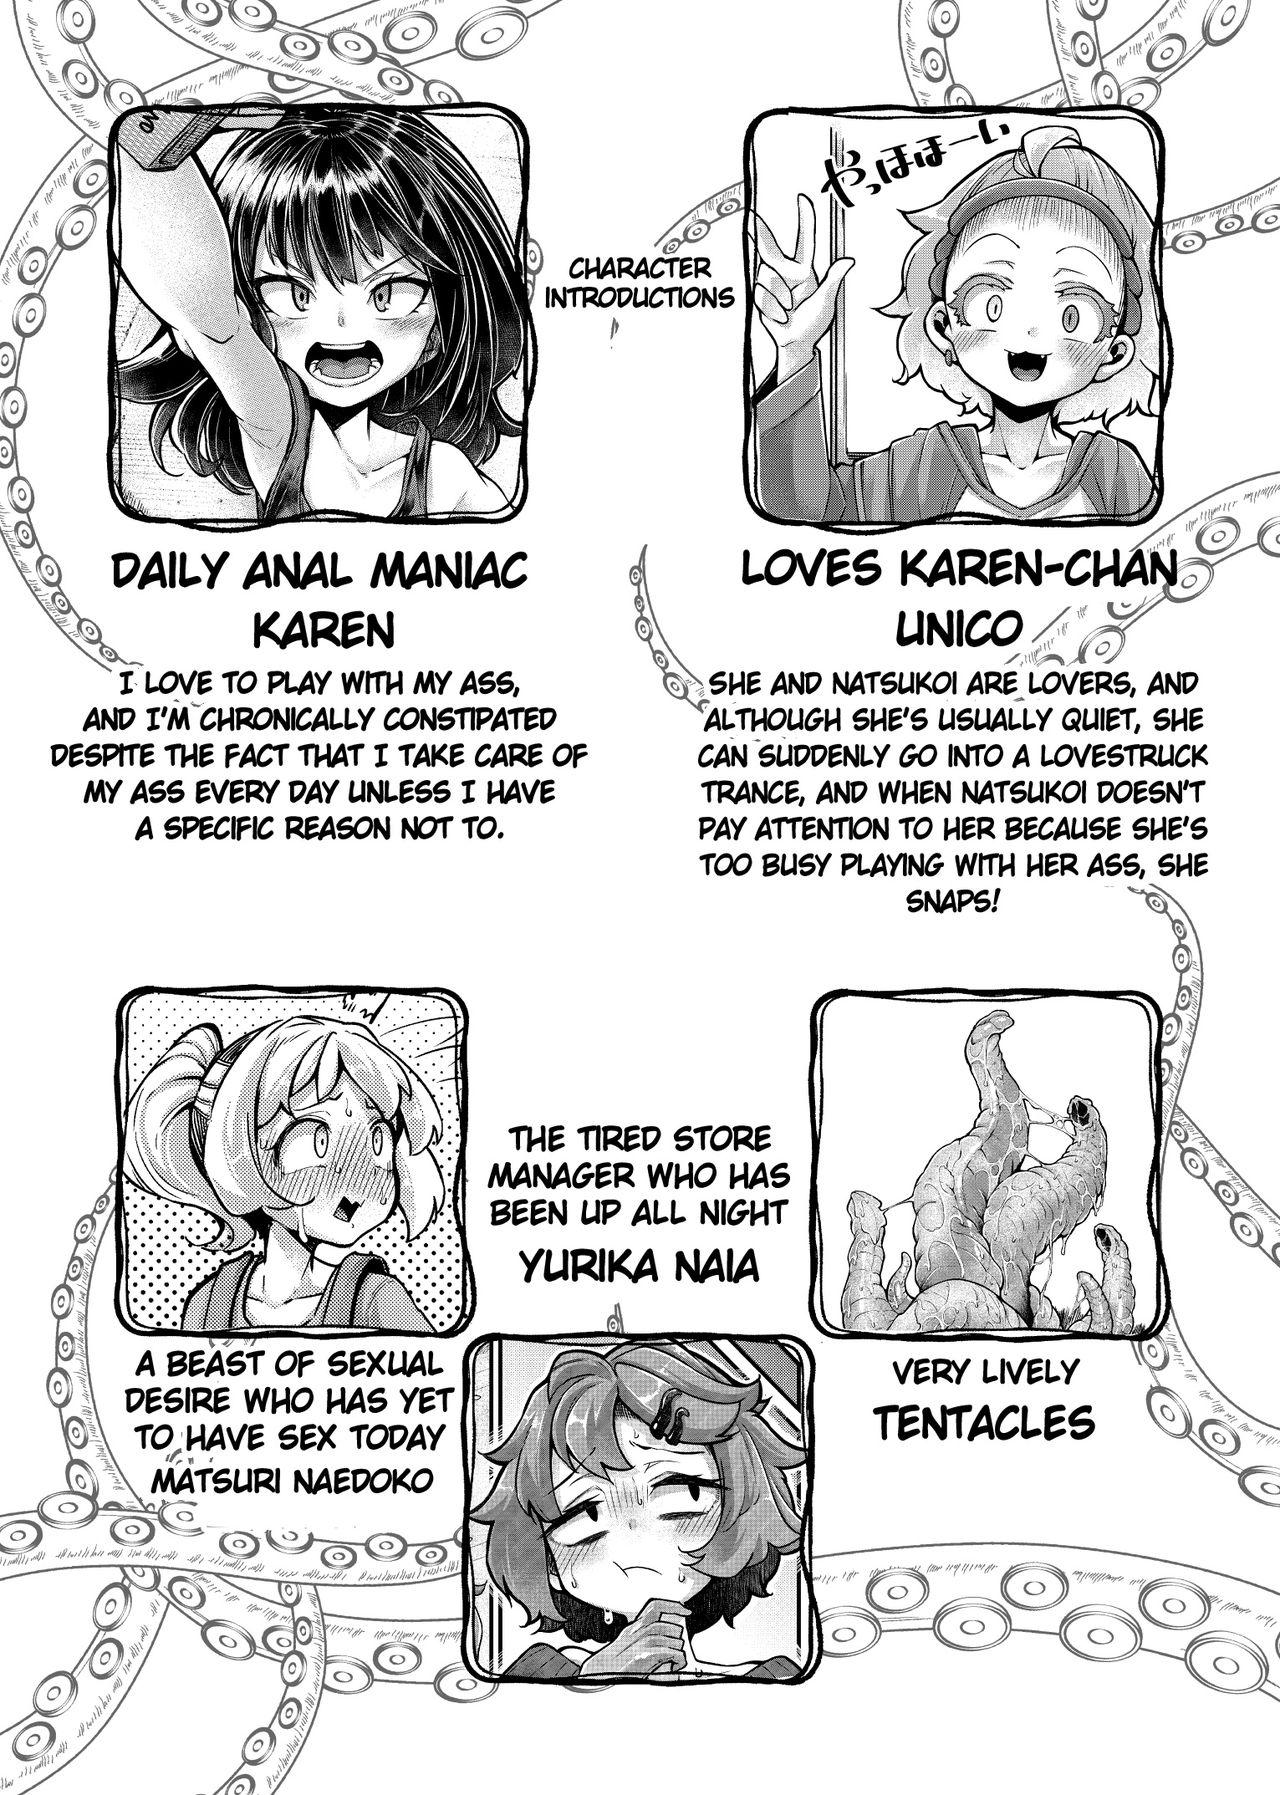 Tiny Titties Anata no Machi no Shokushuya-san 4.5 | Your Neighborhood Tentacle Shop 4.5 - Original Anale - Page 4